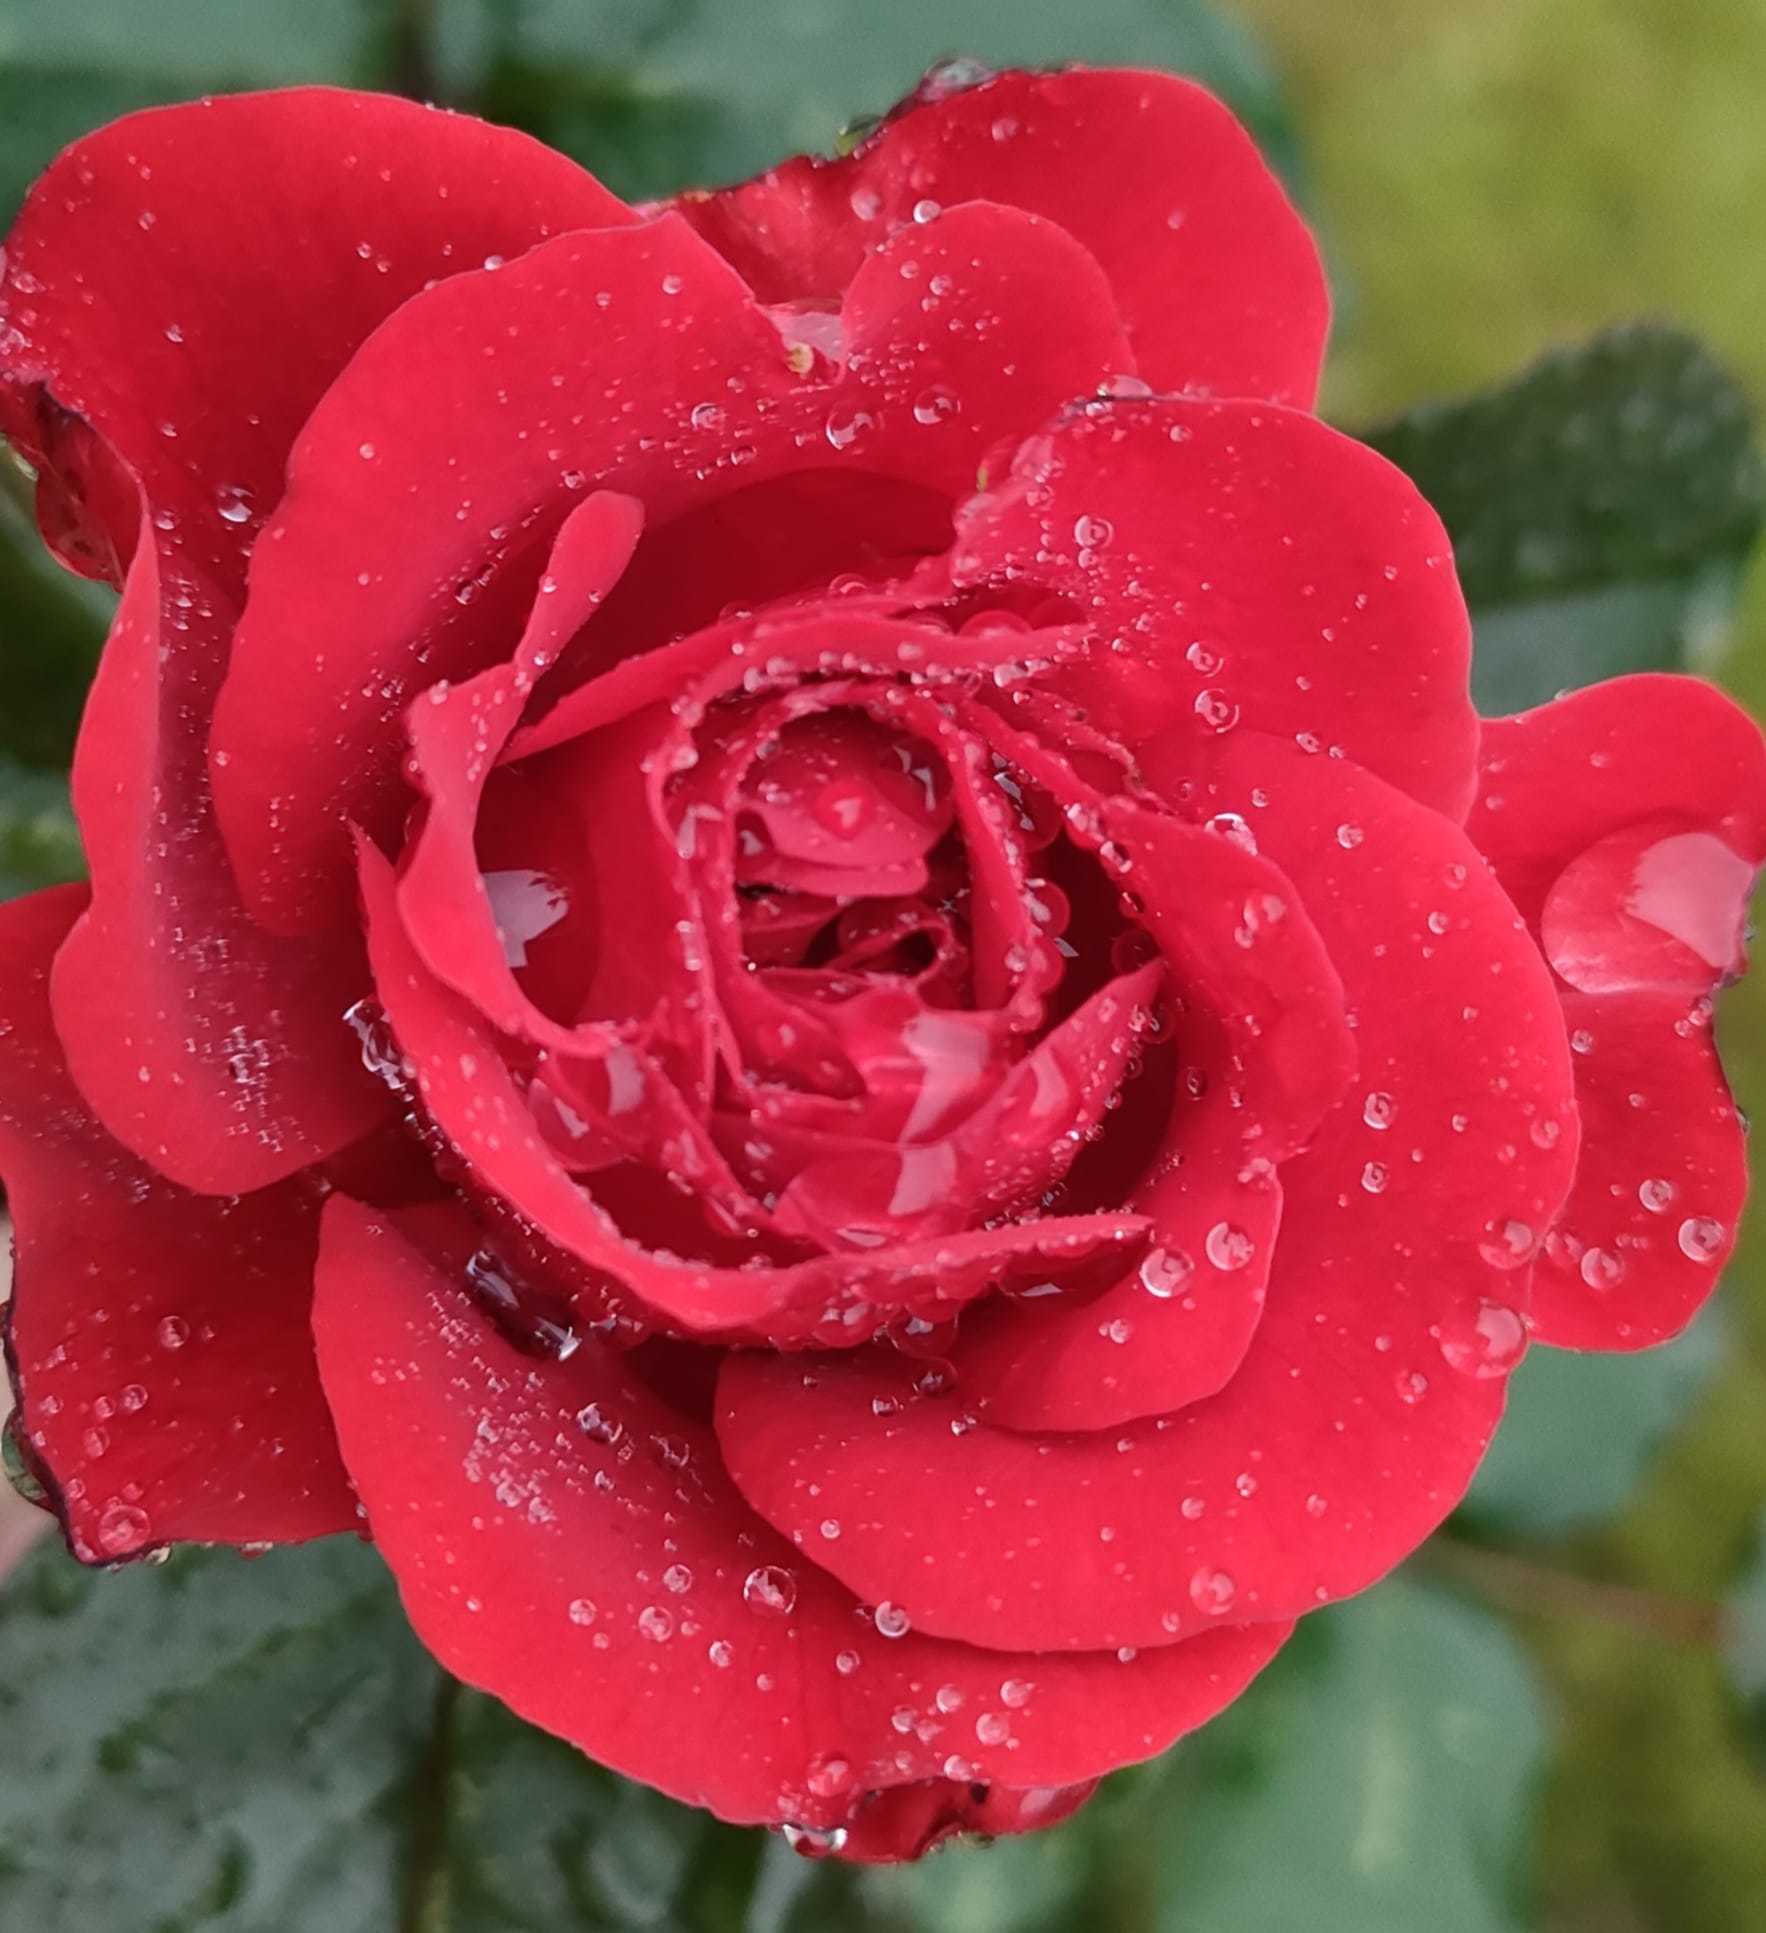 Raindrops on roses by Karen ODowd